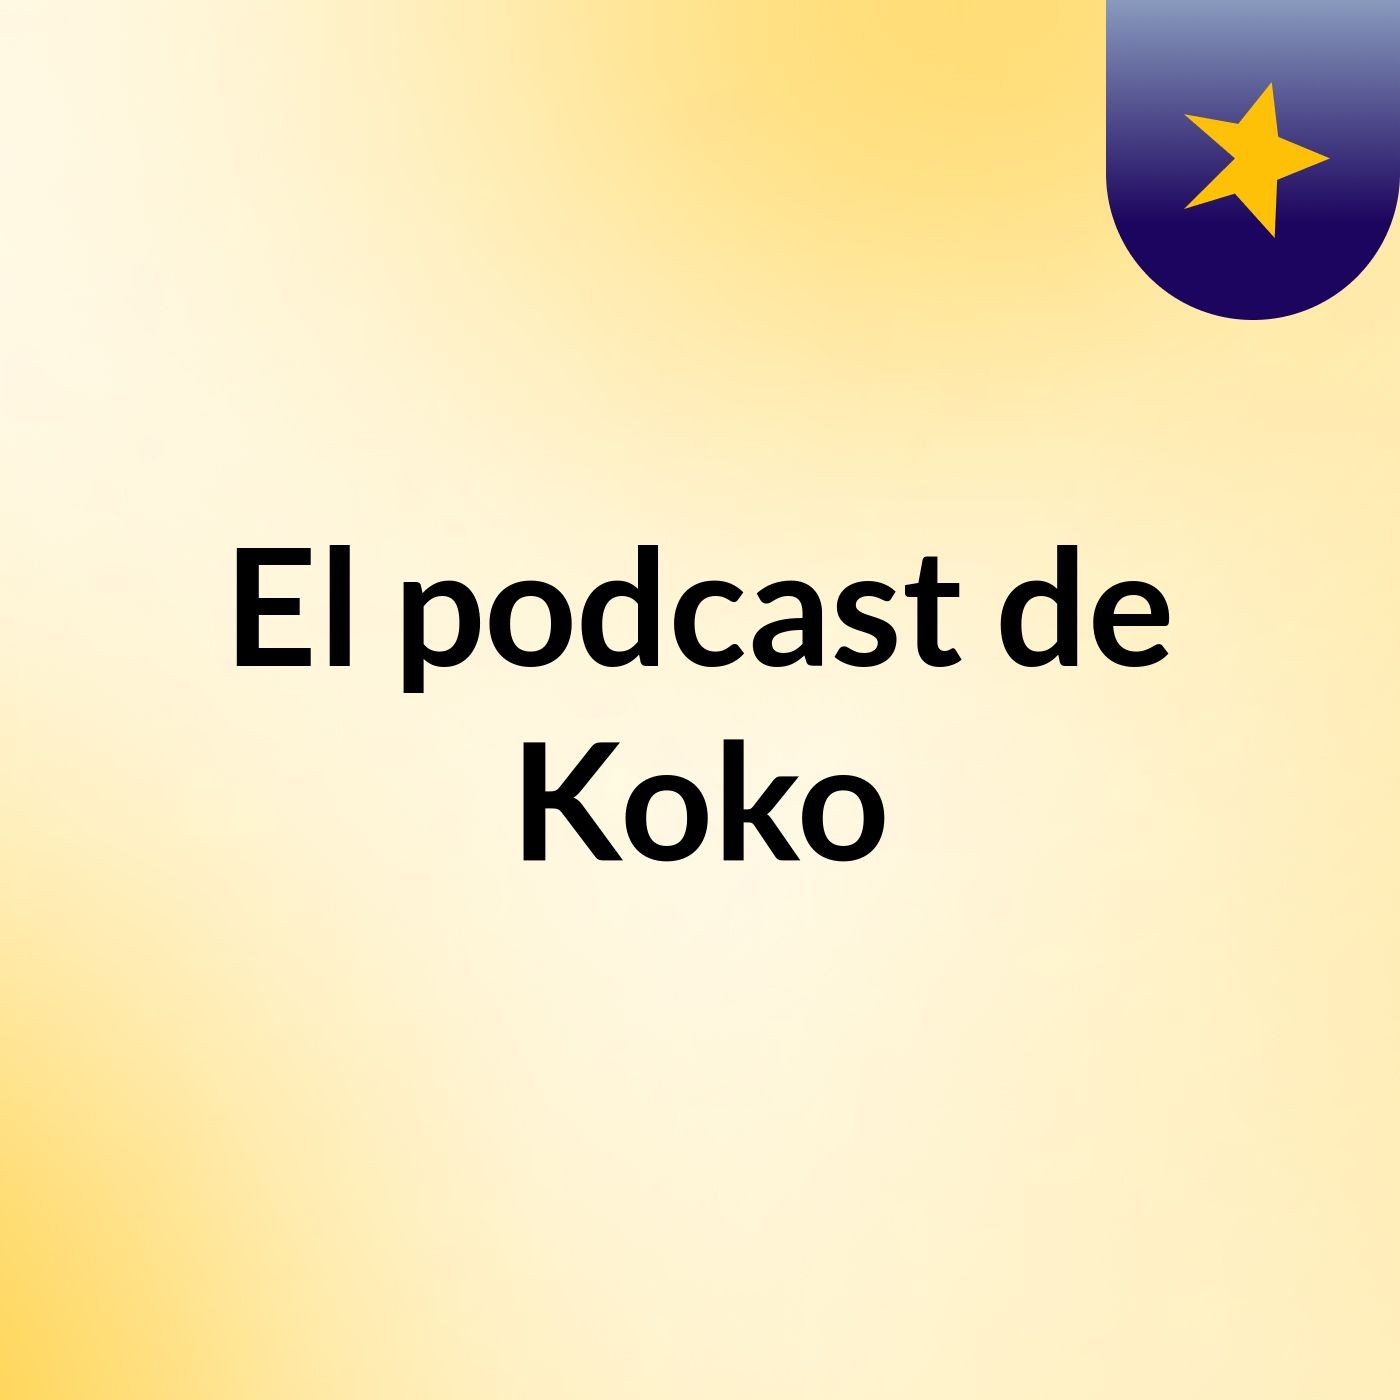 El podcast de Koko